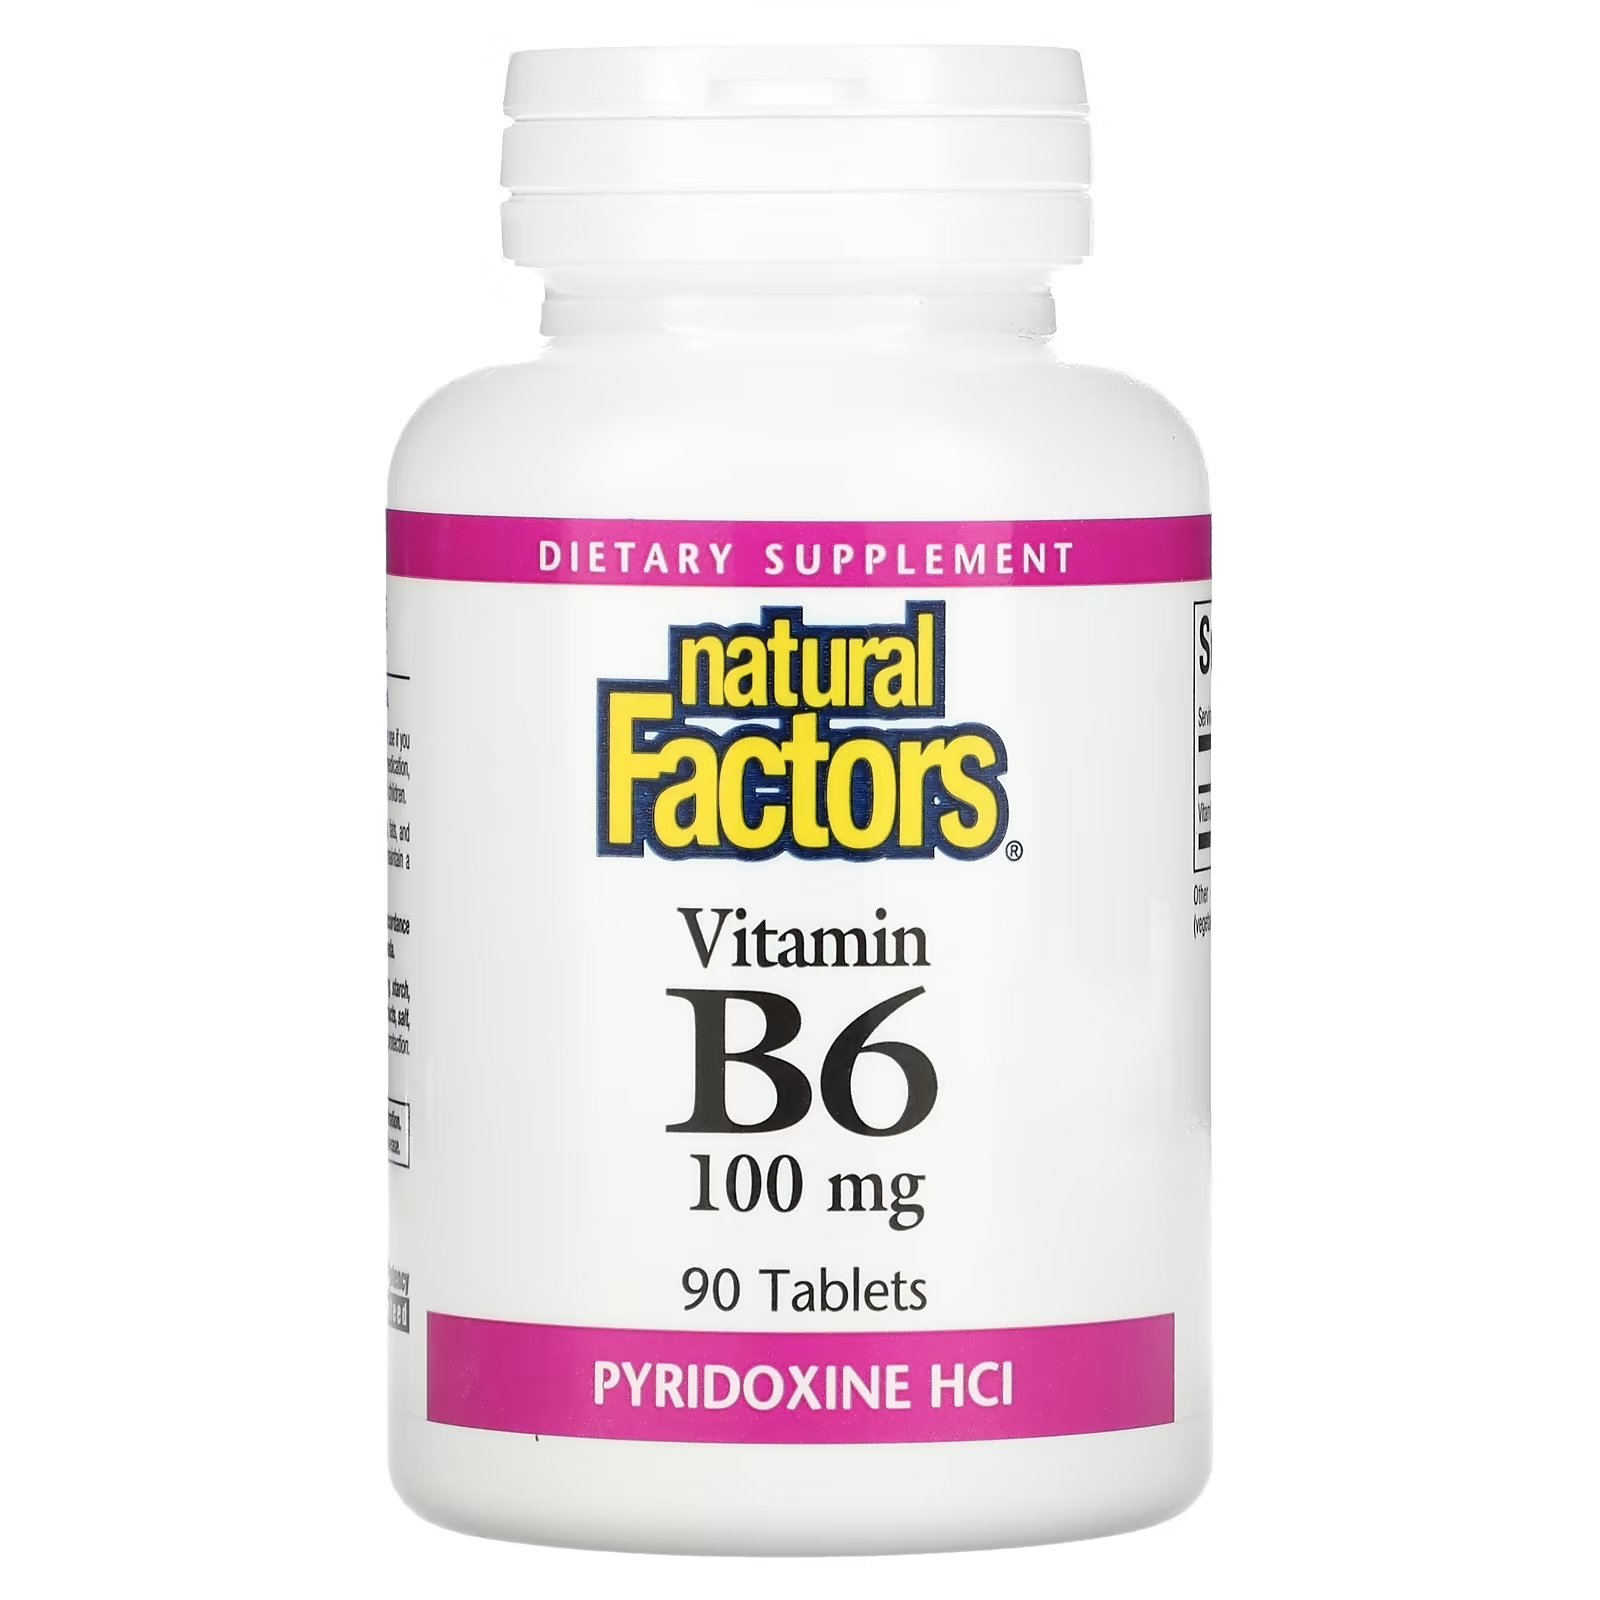 Natural Factors витамин В6 пиридоксина гидрохлорид 100 мг, 90 таблеток витамин c natural factors 250 мг 90 таблеток